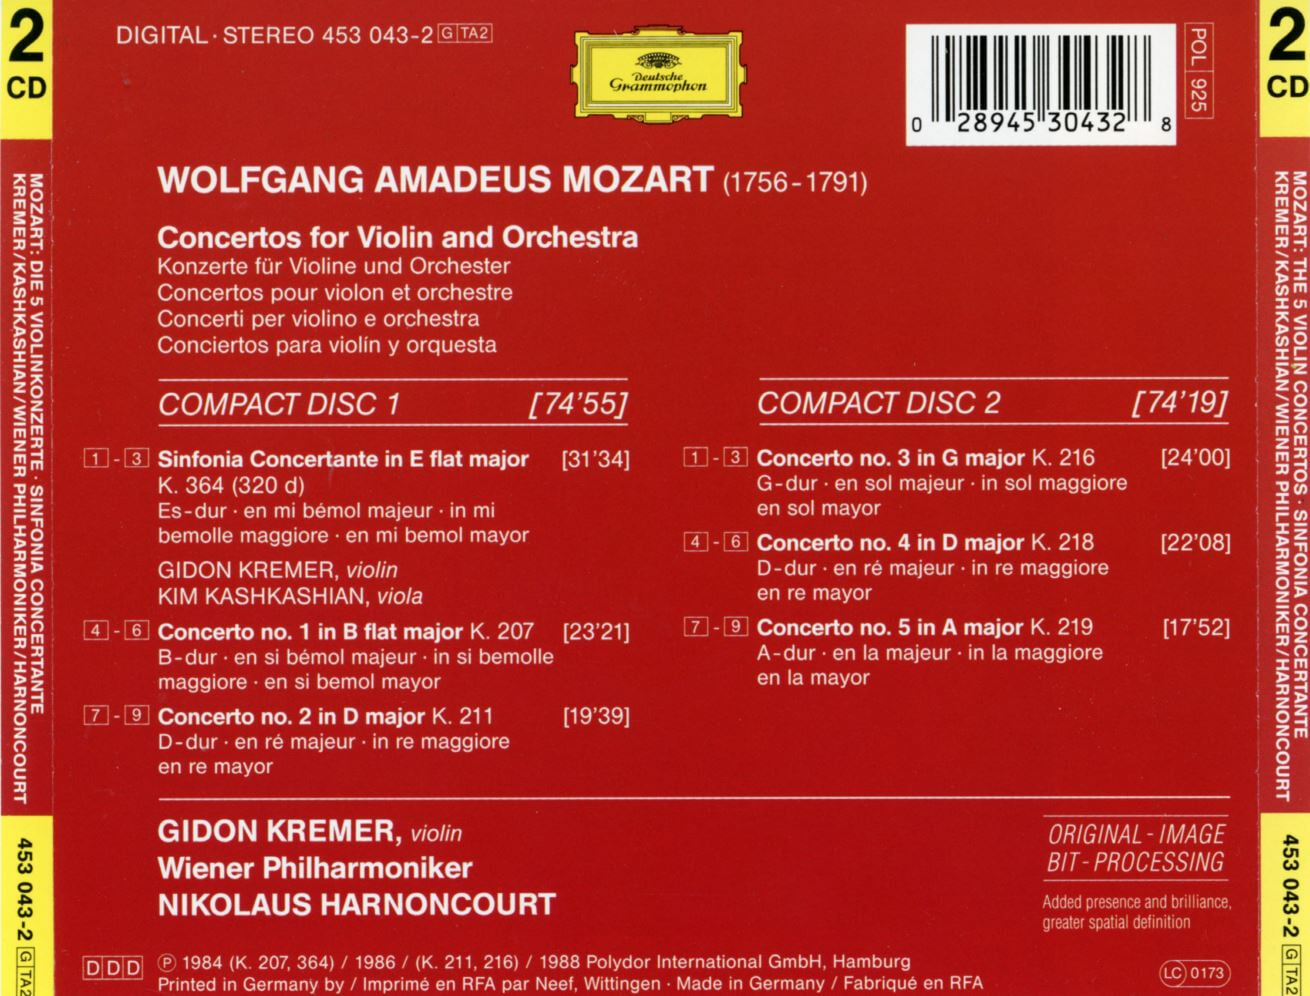 니콜라우스 아르농쿠르,기돈 크레머 - Mozart The 5 Violin Concertos 2Cds [E.U발매]